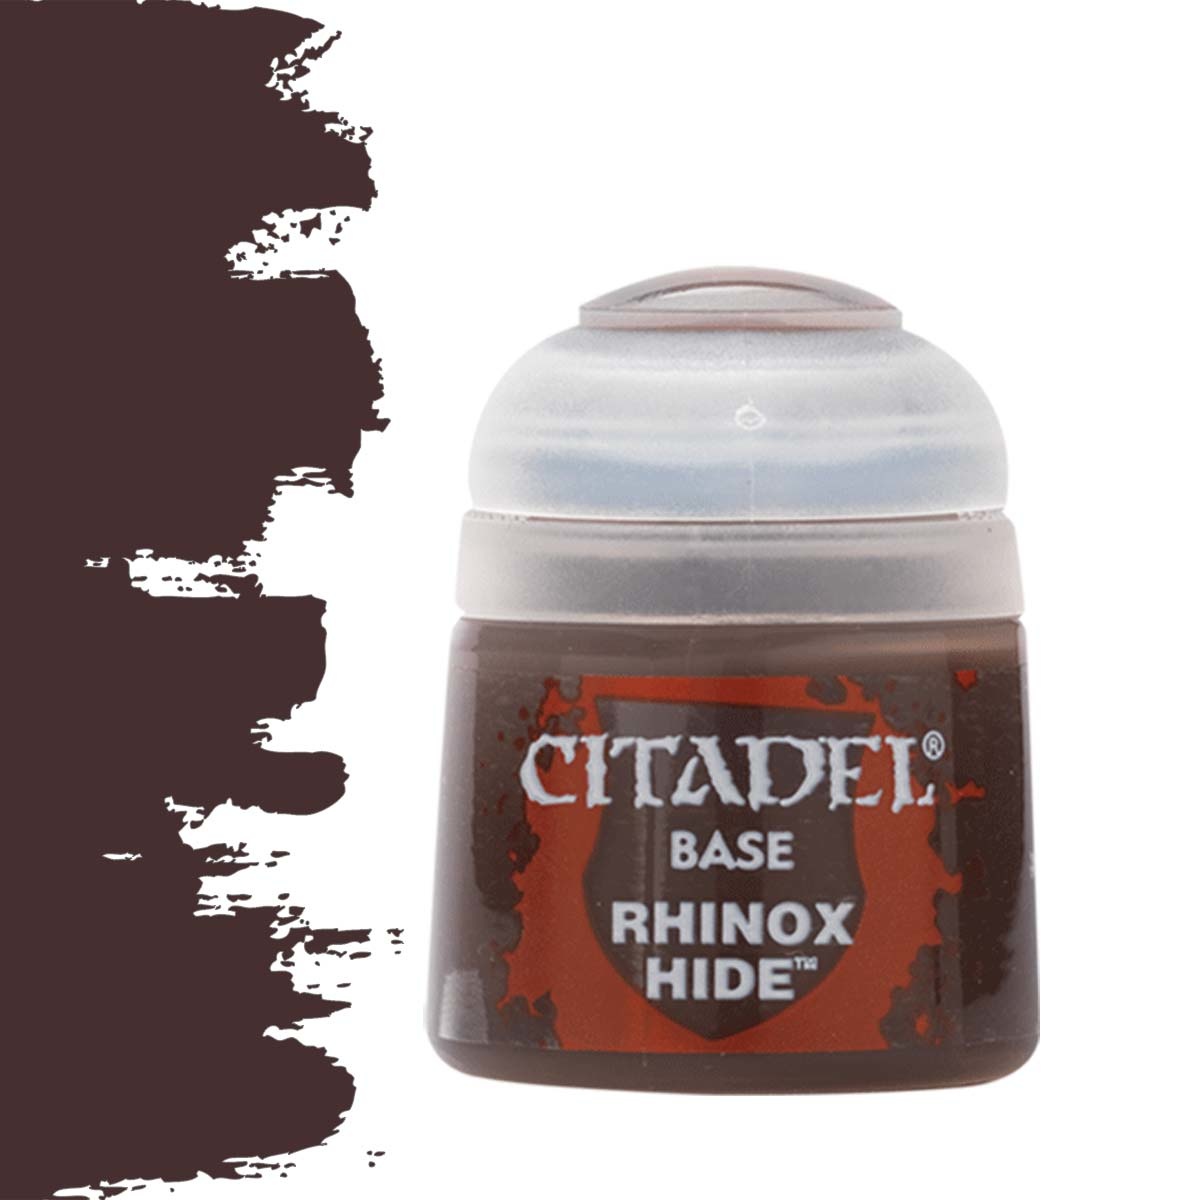 Citadel Rhinox Hide - Base Paint - 12ml - 21-22 - Buy now at Scenery ...